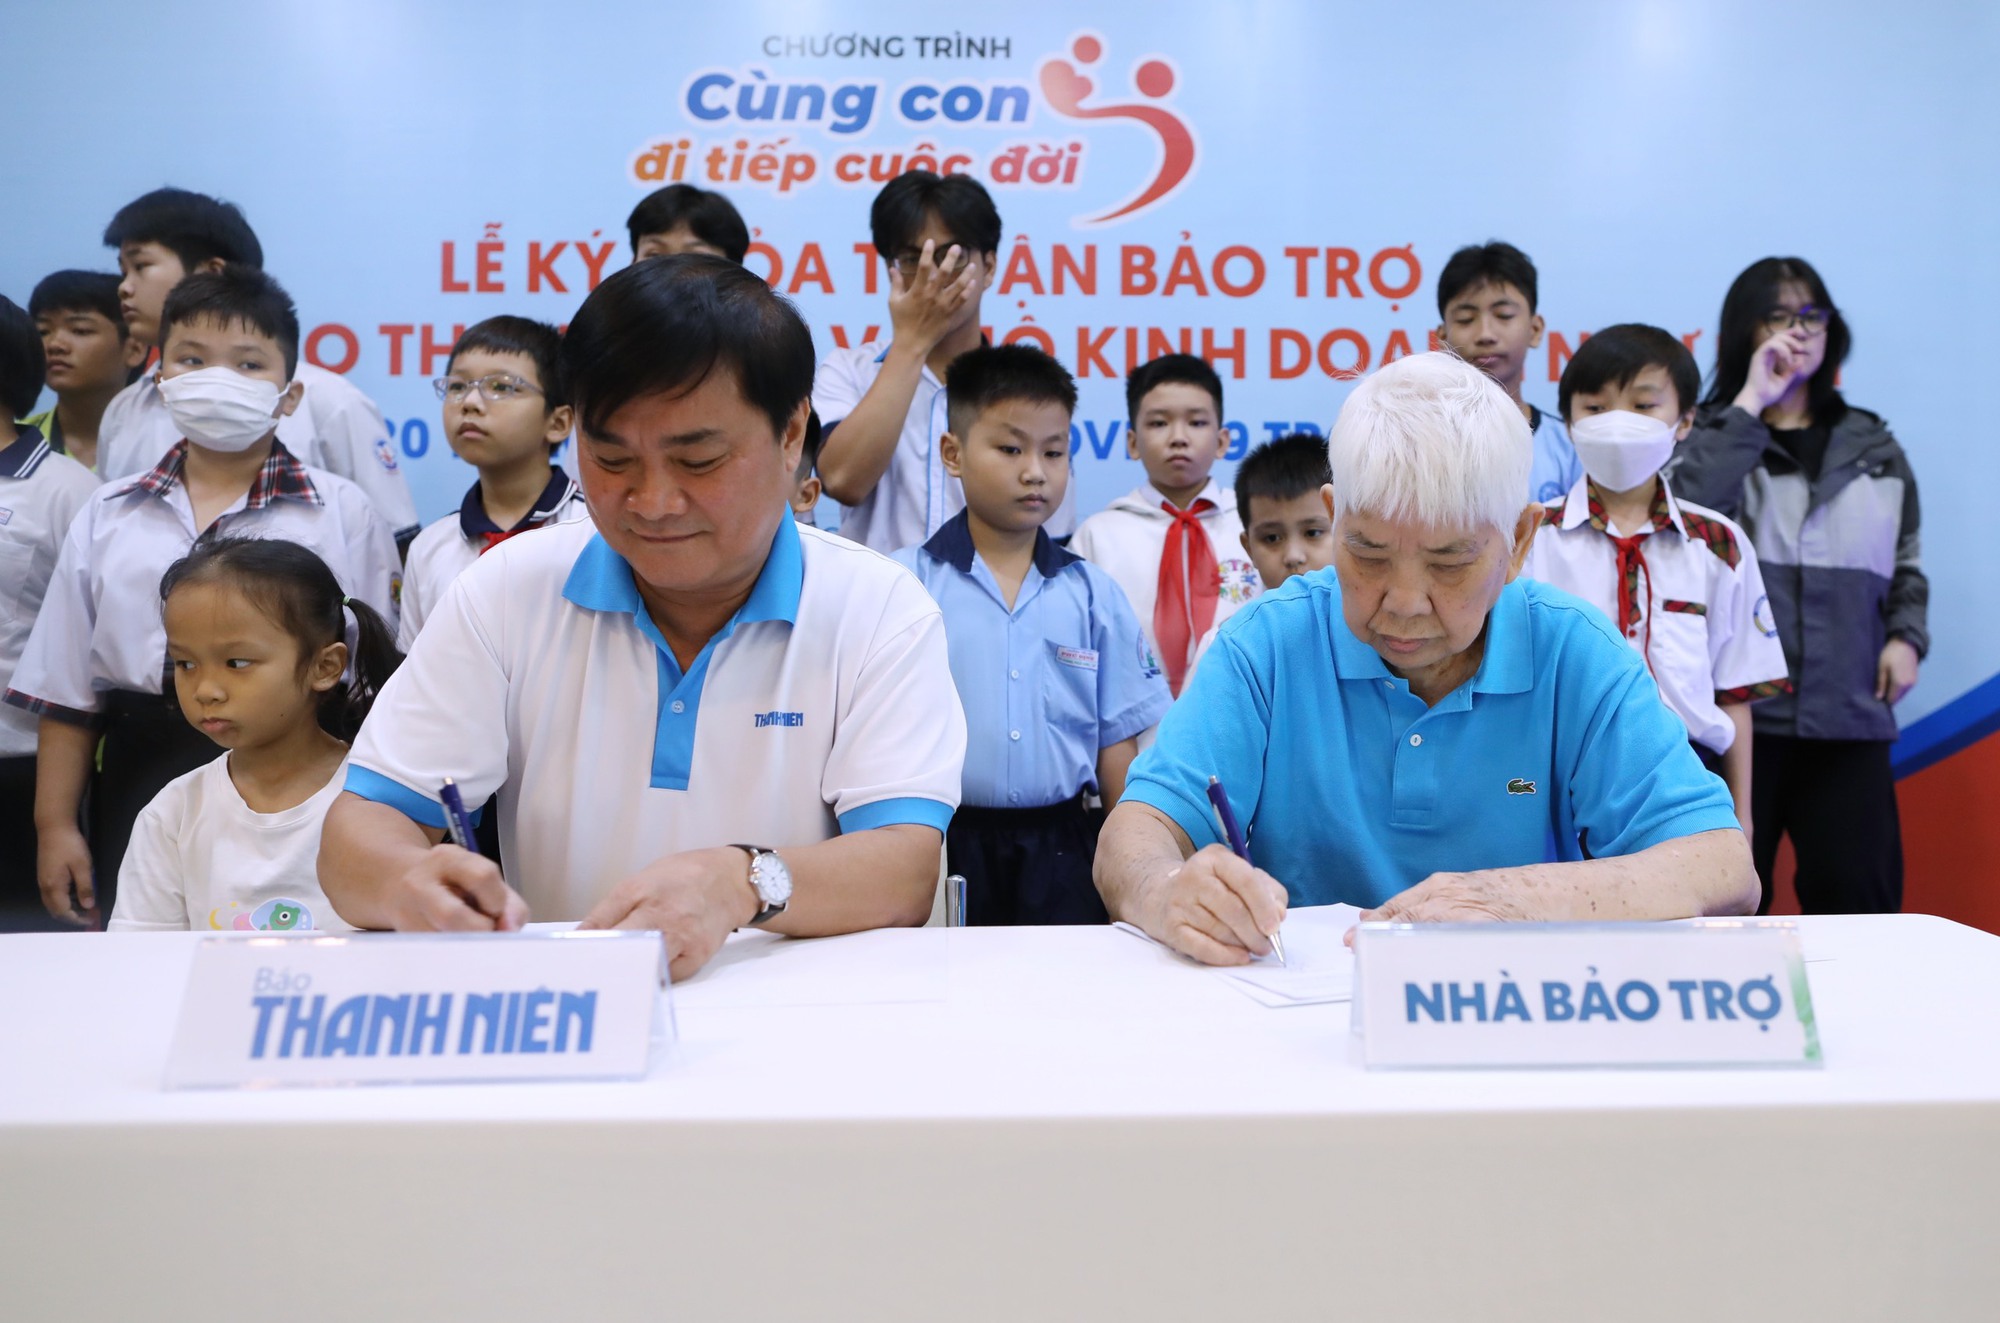 Chủ hiệu bánh Như Lan chi hơn 1 tỉ đồng bảo trợ 20 trẻ mồ côi - Ảnh 2.